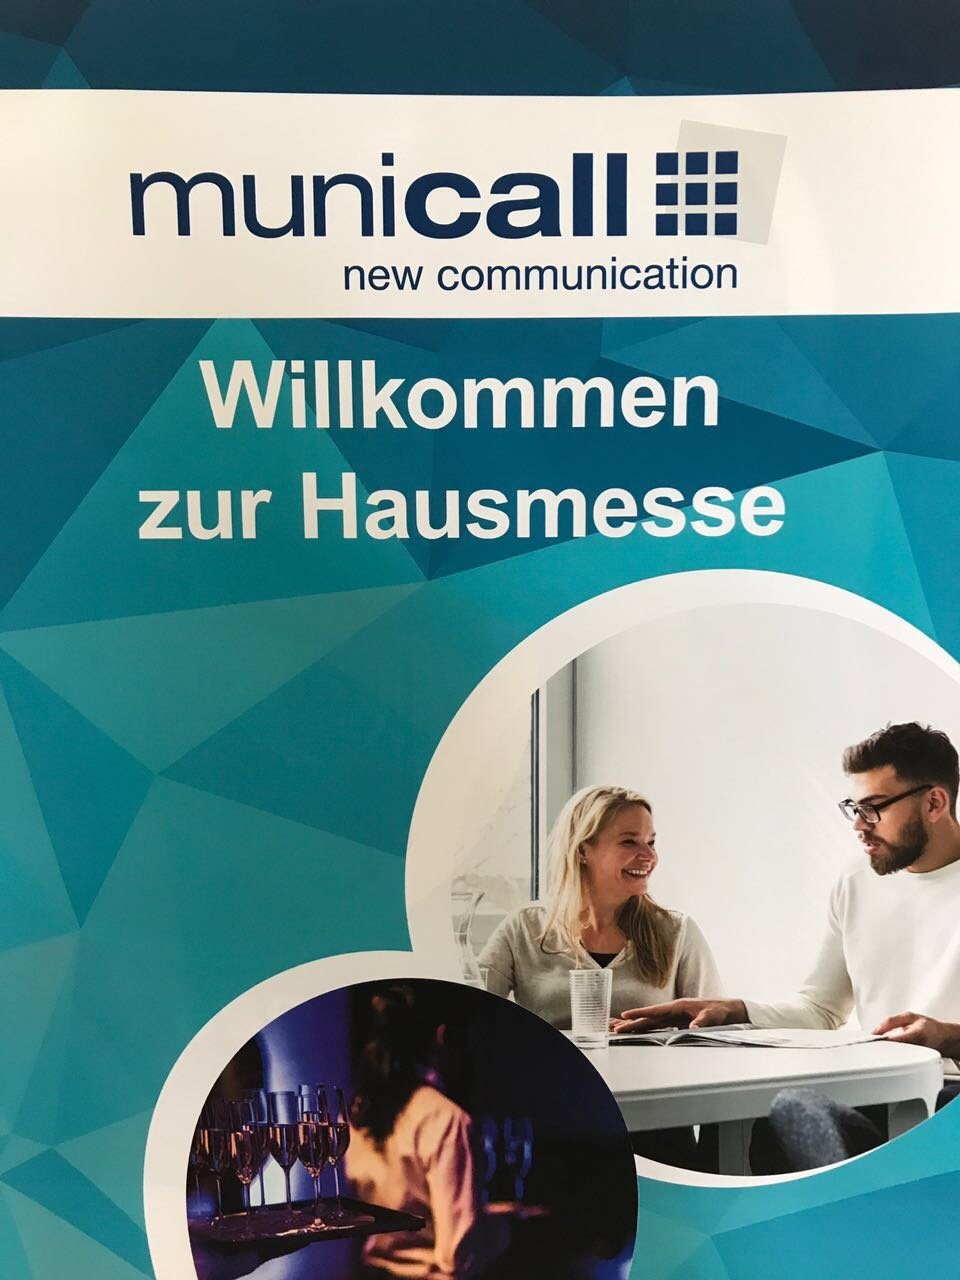 Municall Hausmesse 23.06.2017 - Rückblick - Featured Image